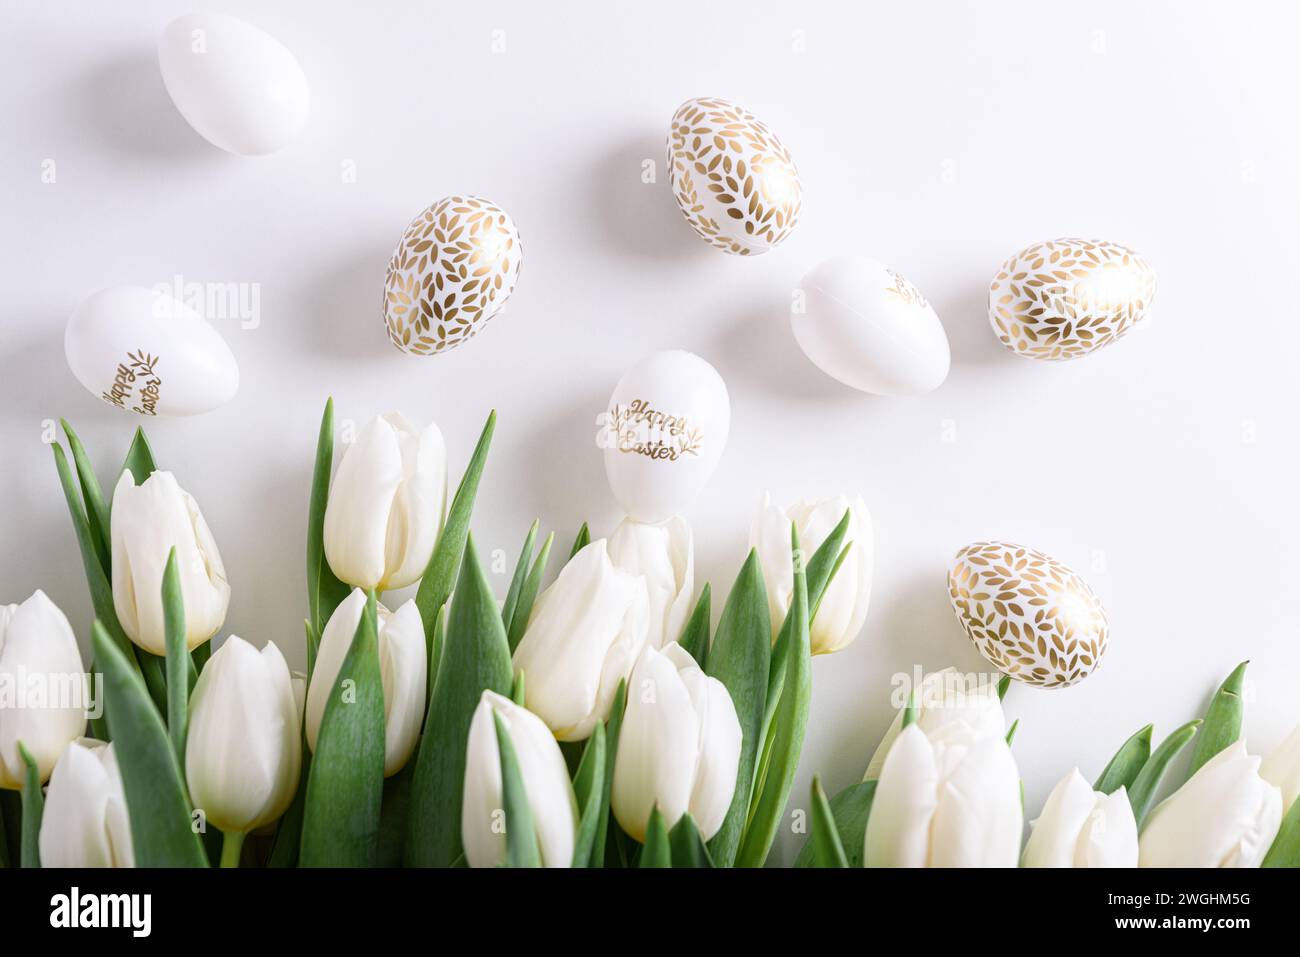 Bordure florale de bouquet de tulipes blanches, oeufs de Pâques et jouets sur fond blanc. Concept de célébration de Pâques. Espace de copie. Vue de dessus Banque D'Images